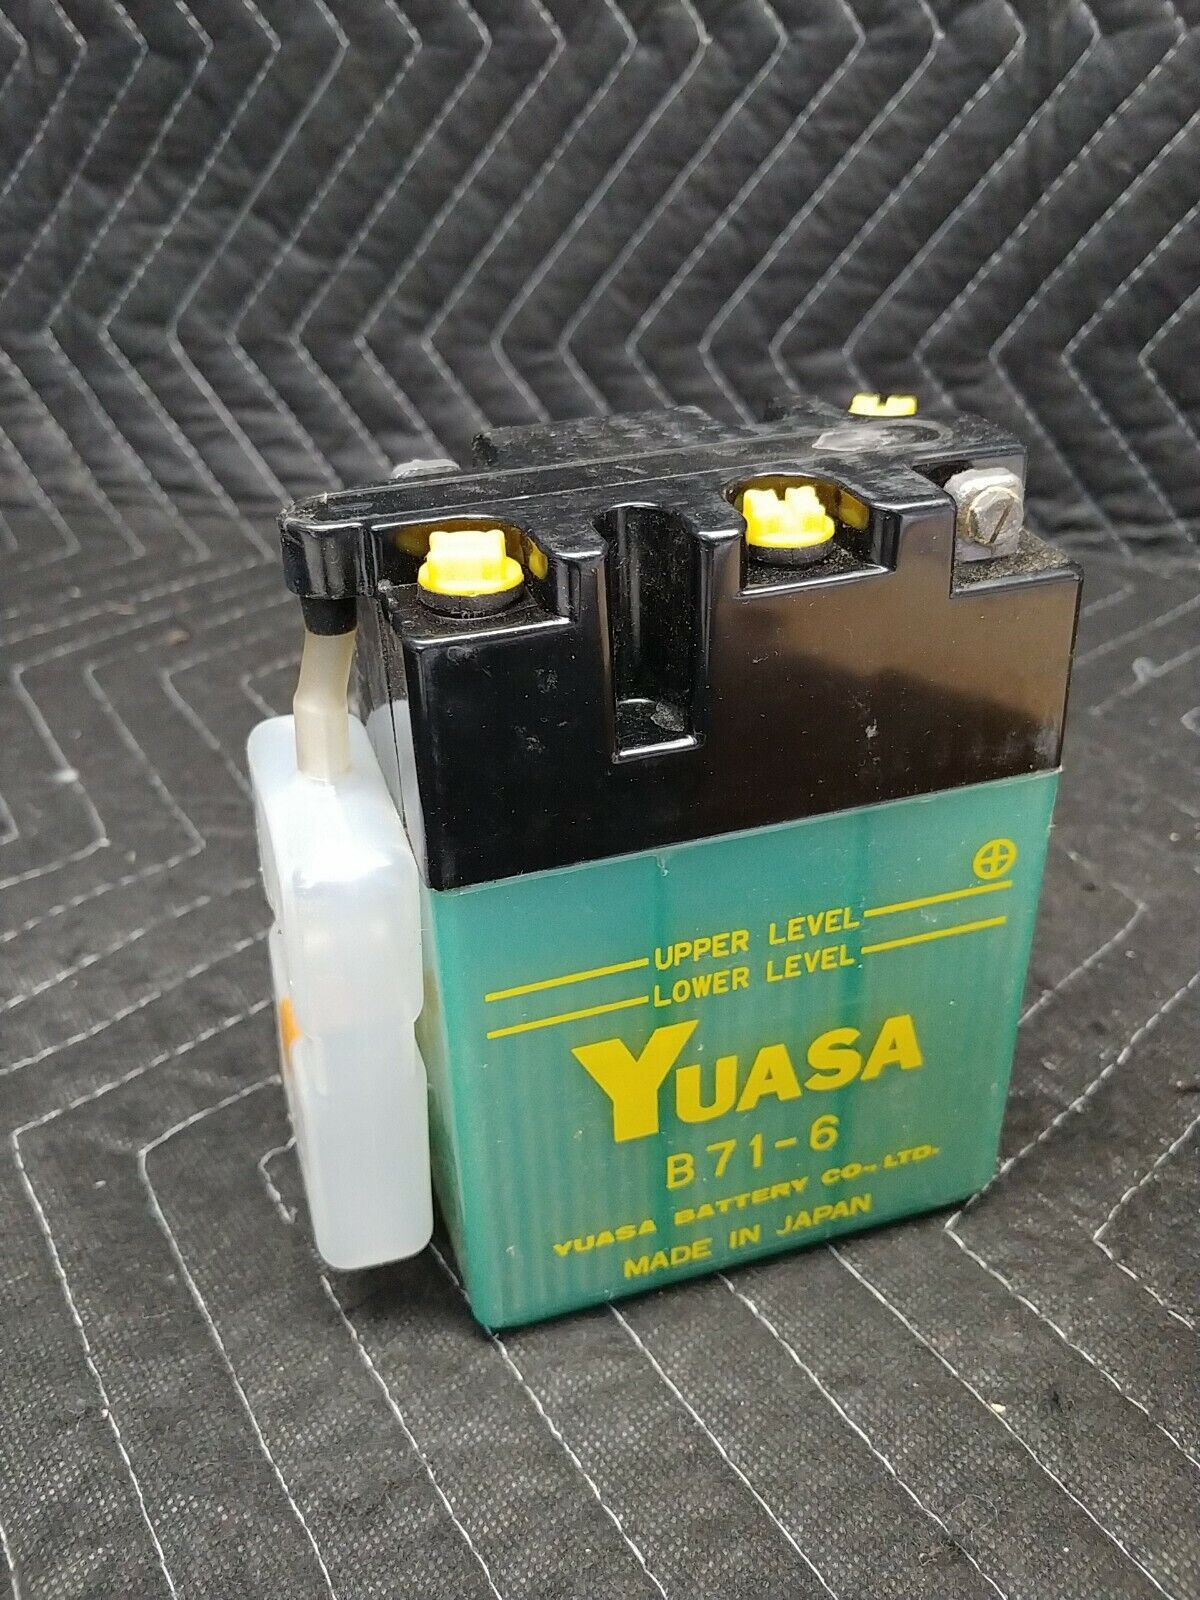 Yuasa B71-6 Japan Battery